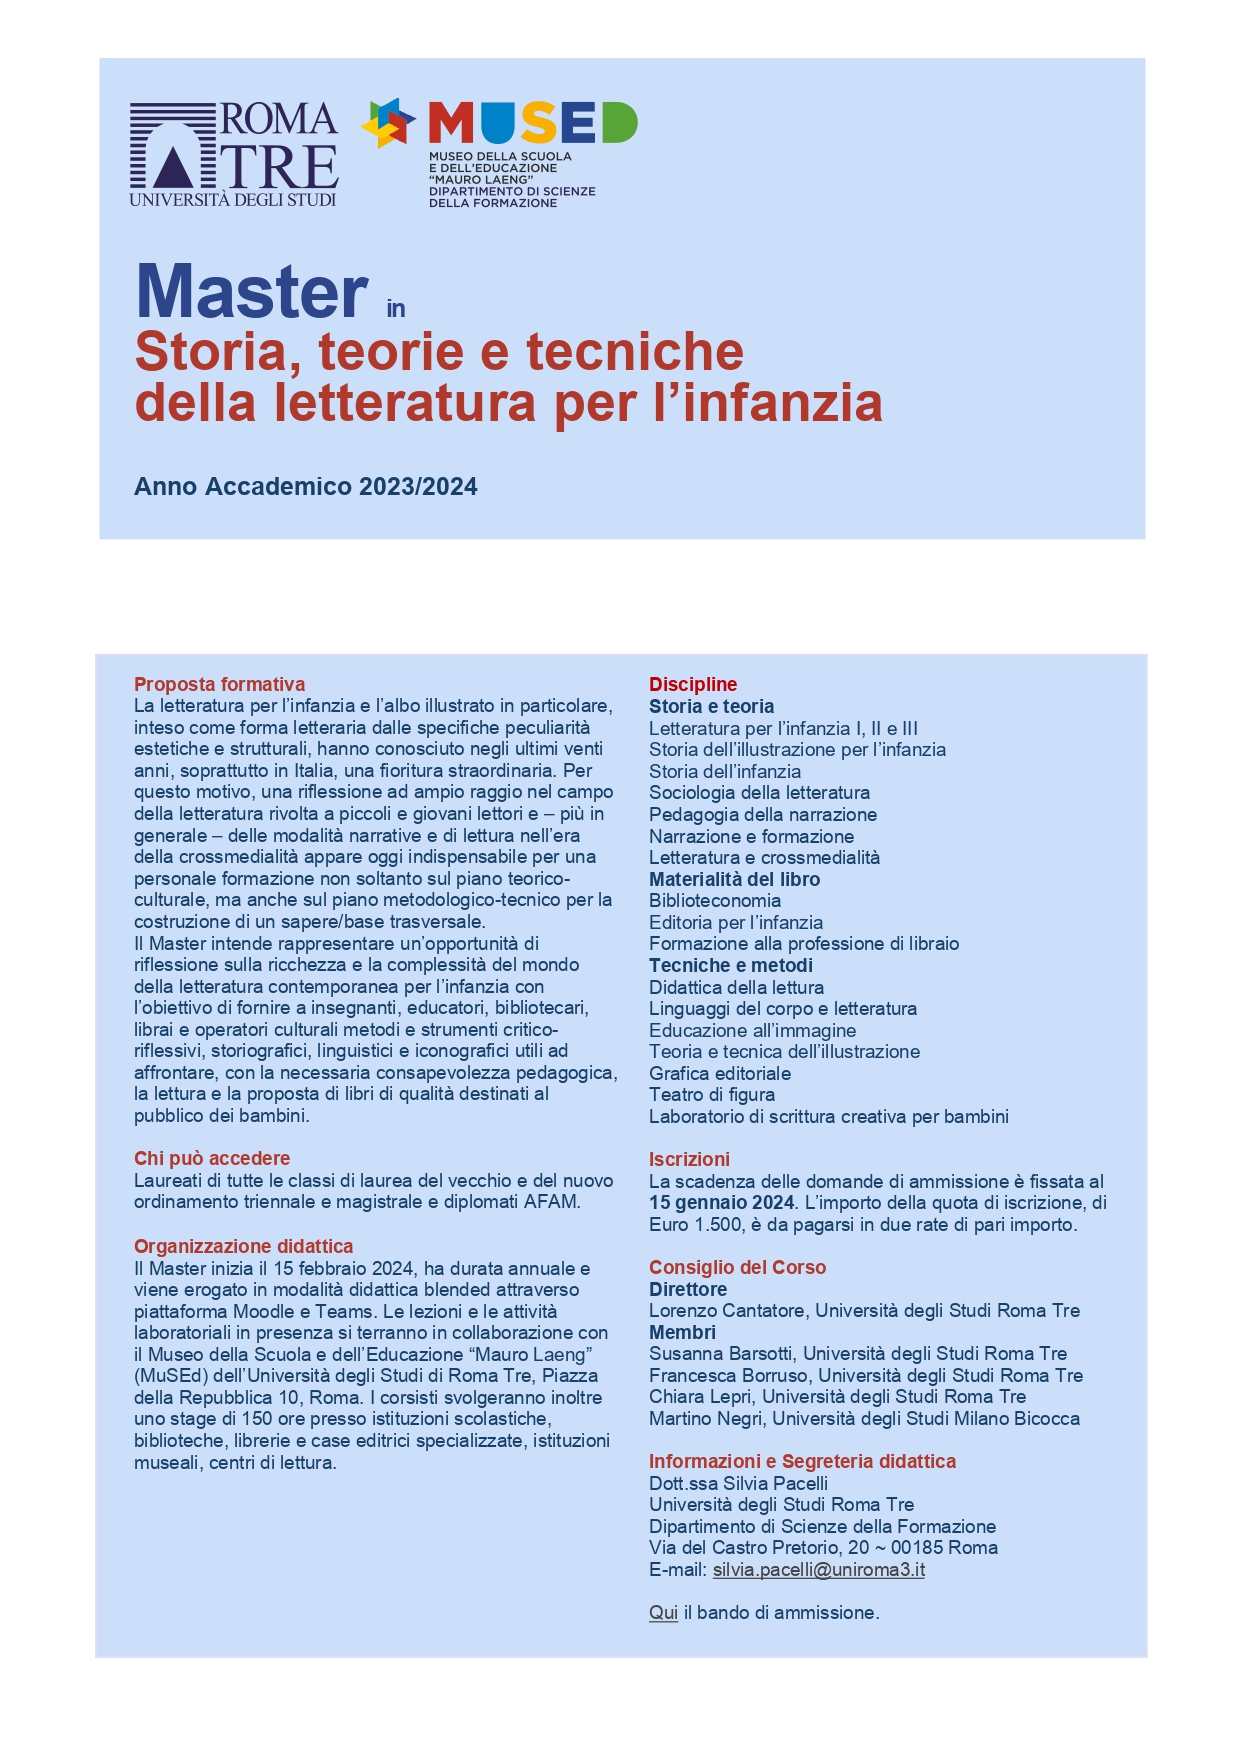 Master Letteratura per l'infanzia - Roma Tre Locandina primo lancio_page-0001